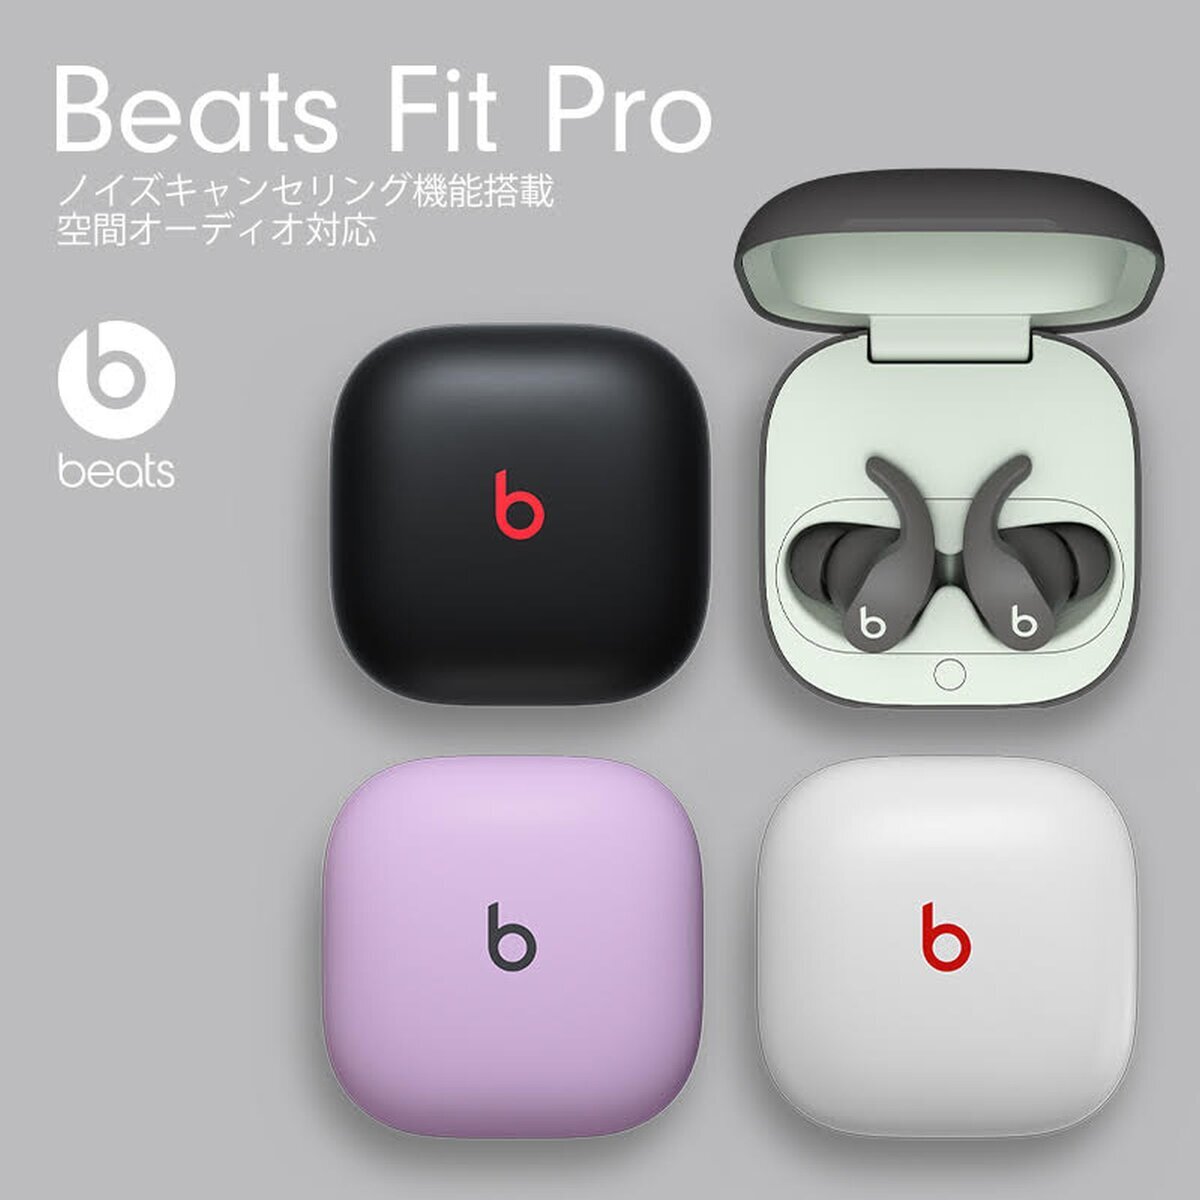 Beats Fit Pro 完全ワイヤレスイヤホン | Costco Japan